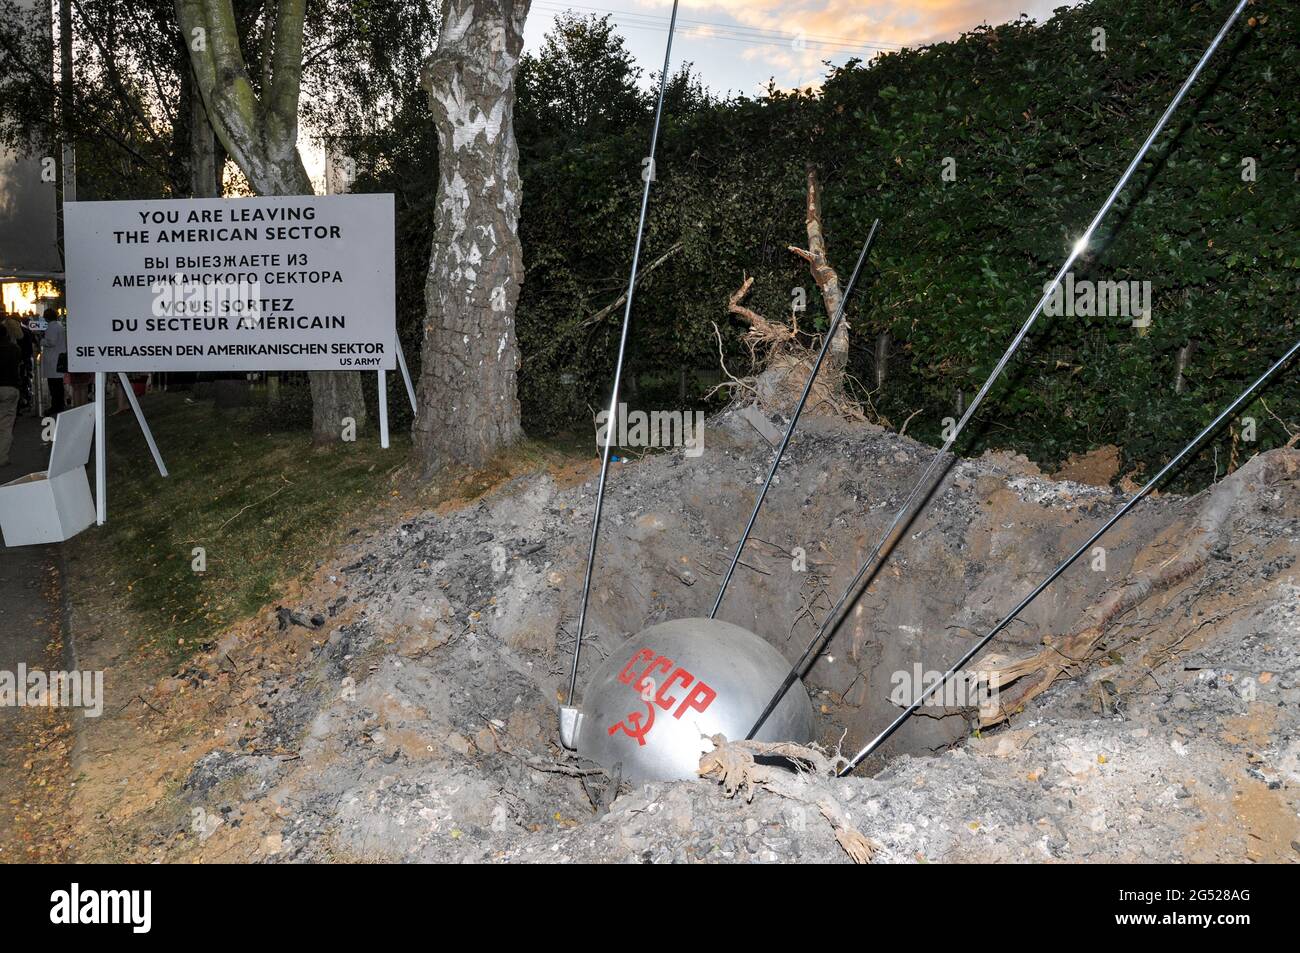 Humorvolles Diorama beim Goodwood Revival 2012, das die Ost-West-Grenze mit einem mit CCCP markierten Sputnik 1-Satelliten darstellt, der zur Erde abgestürzt ist Stockfoto